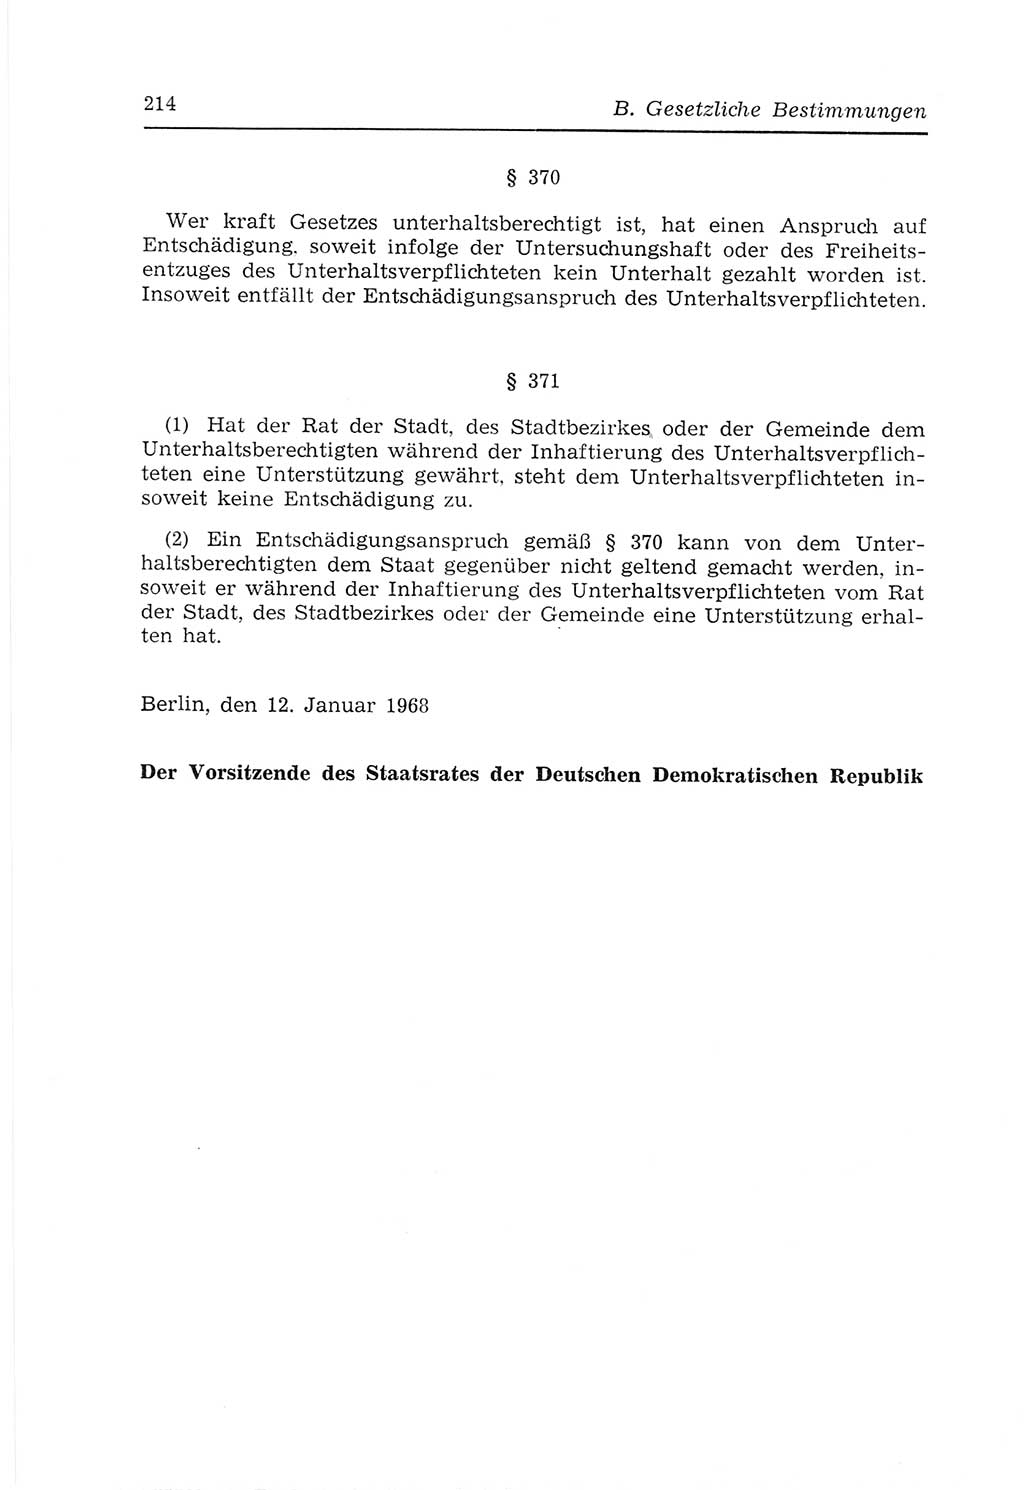 Strafvollzugs- und Wiedereingliederungsgesetz (SVWG) der Deutschen Demokratischen Republik (DDR) 1968, Seite 214 (SVWG DDR 1968, S. 214)